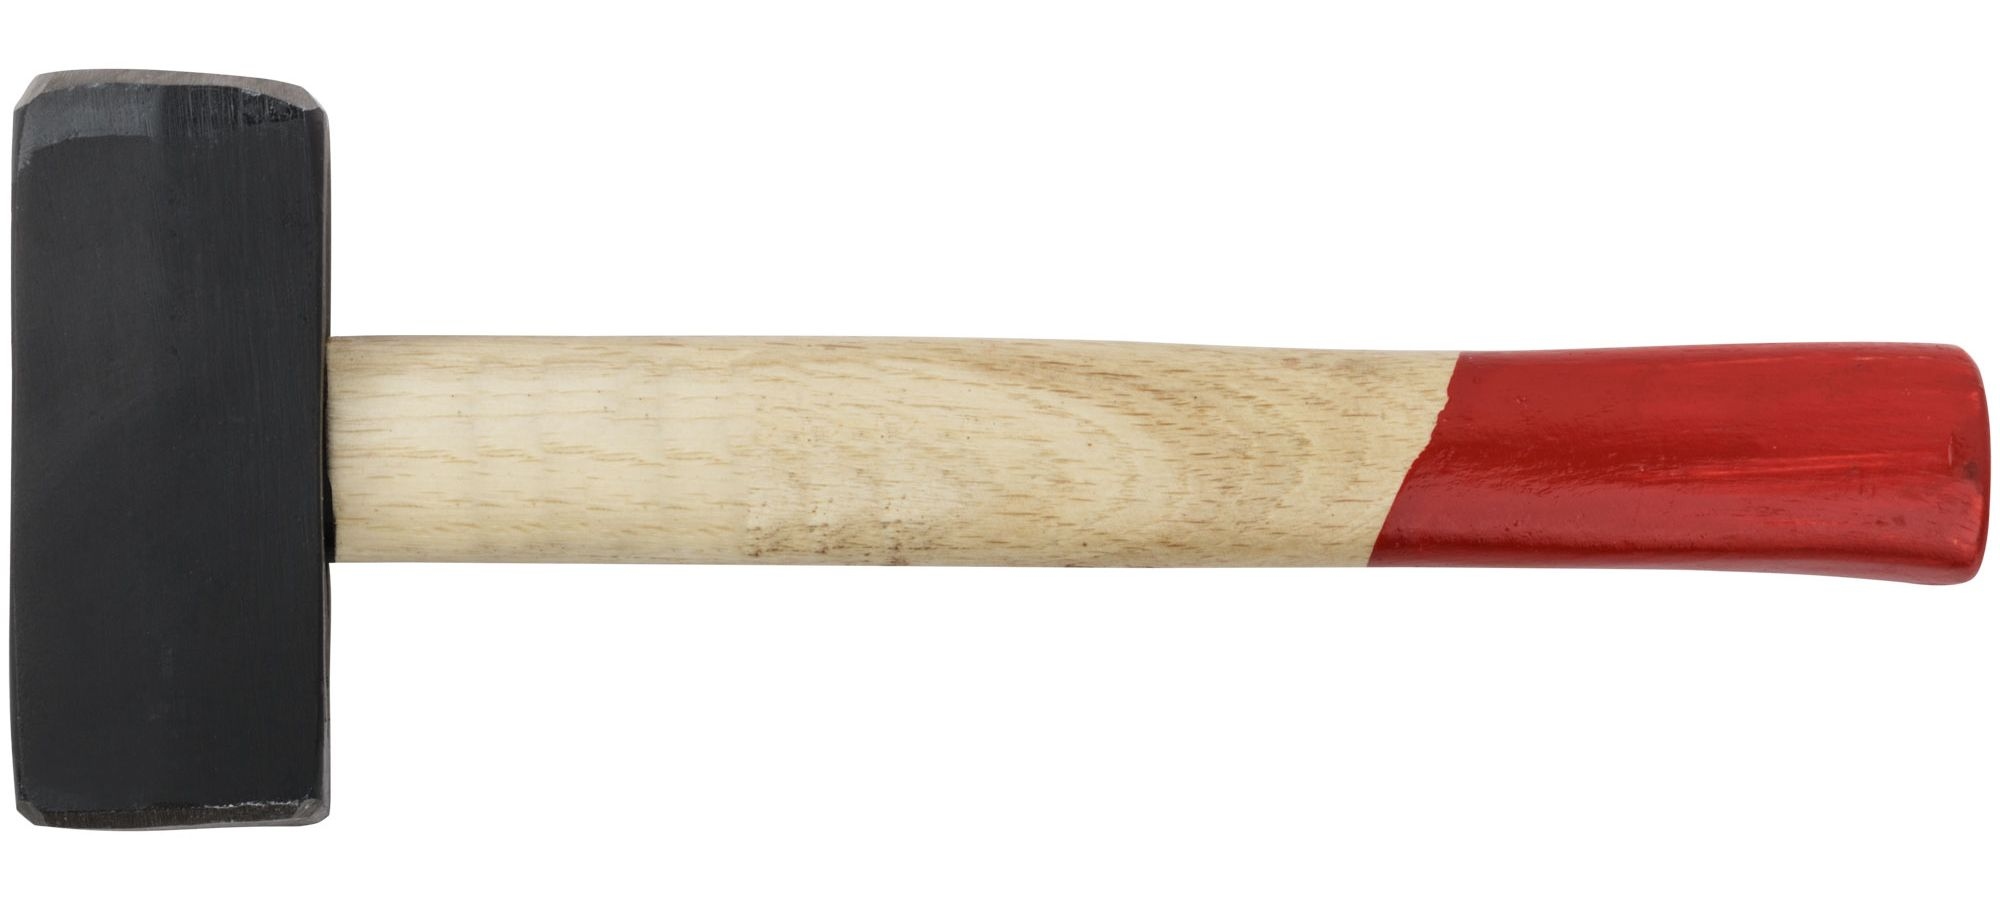 кувалда деревянная рукоятка 1500 гр pobedit Кувалда MOS деревянная ручка 1,5 кг 45082М